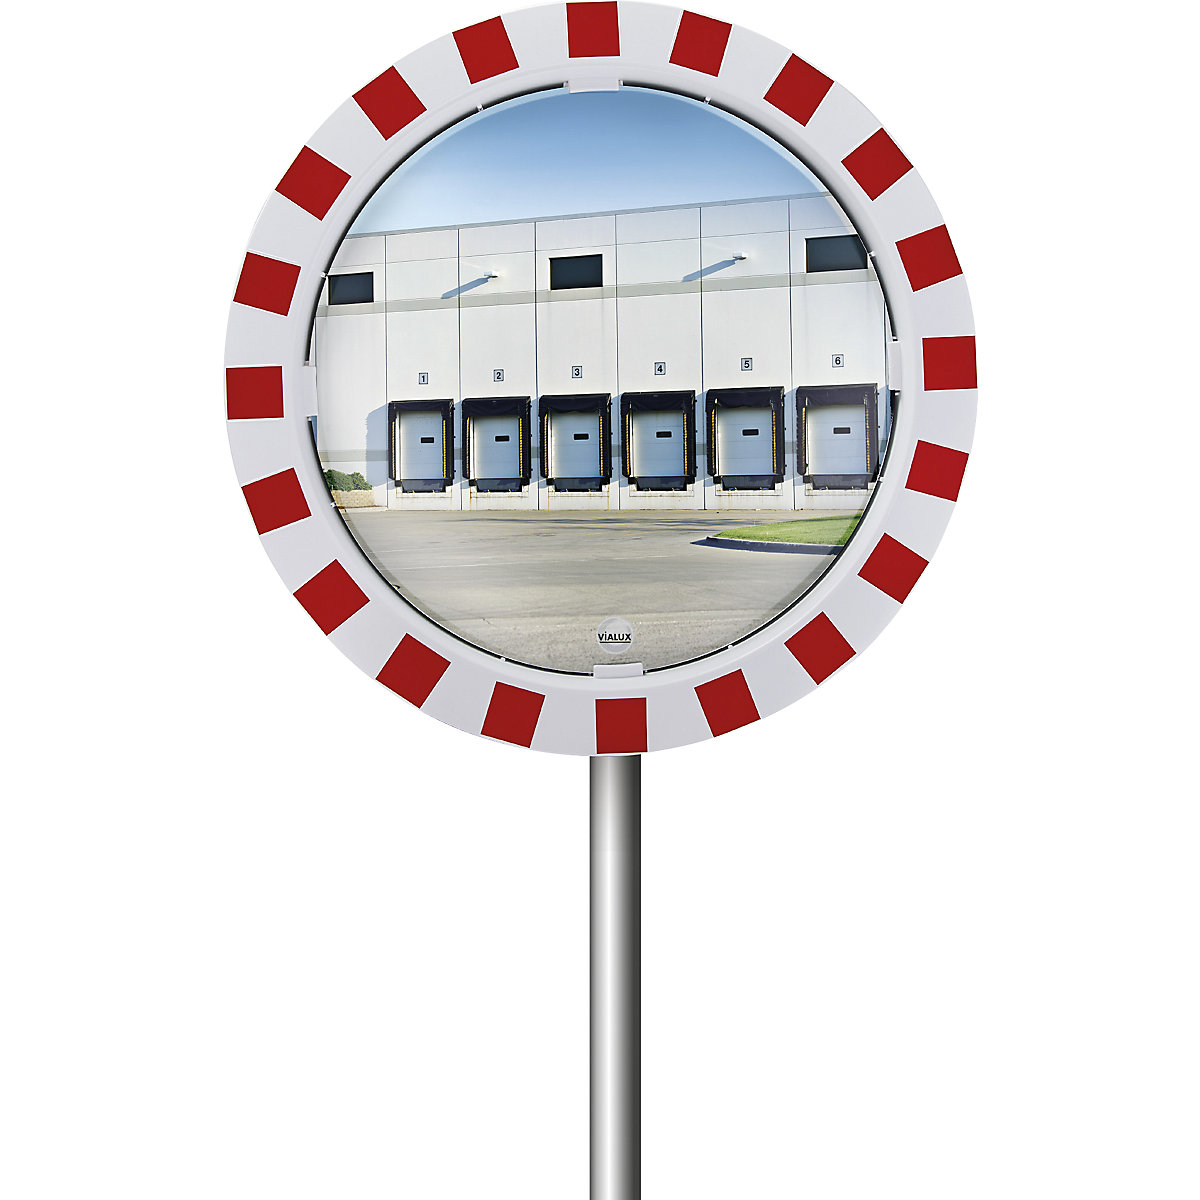 Miroir grand angle – eurokraft pro: pour intérieur et extérieur, 180°